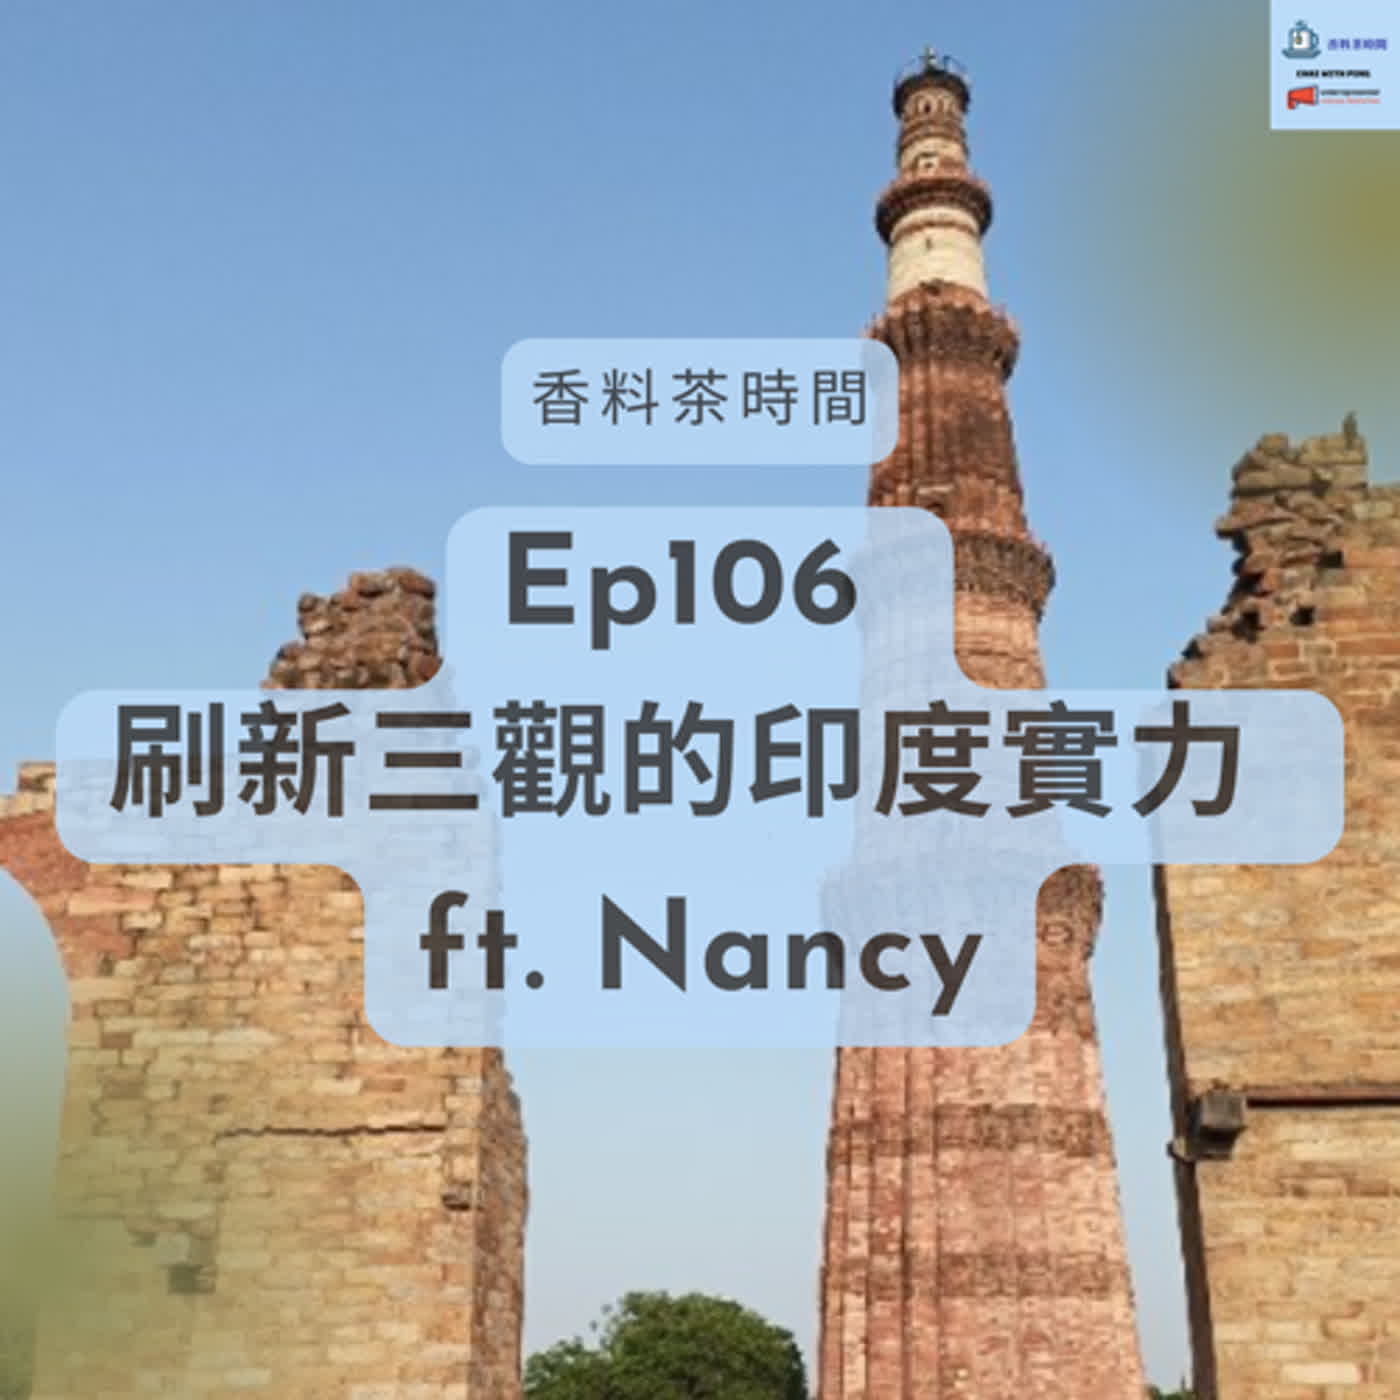 [各行各業] Ep107 刷新三觀的印度實力 ft. 行家帶你遊印度 Nancy